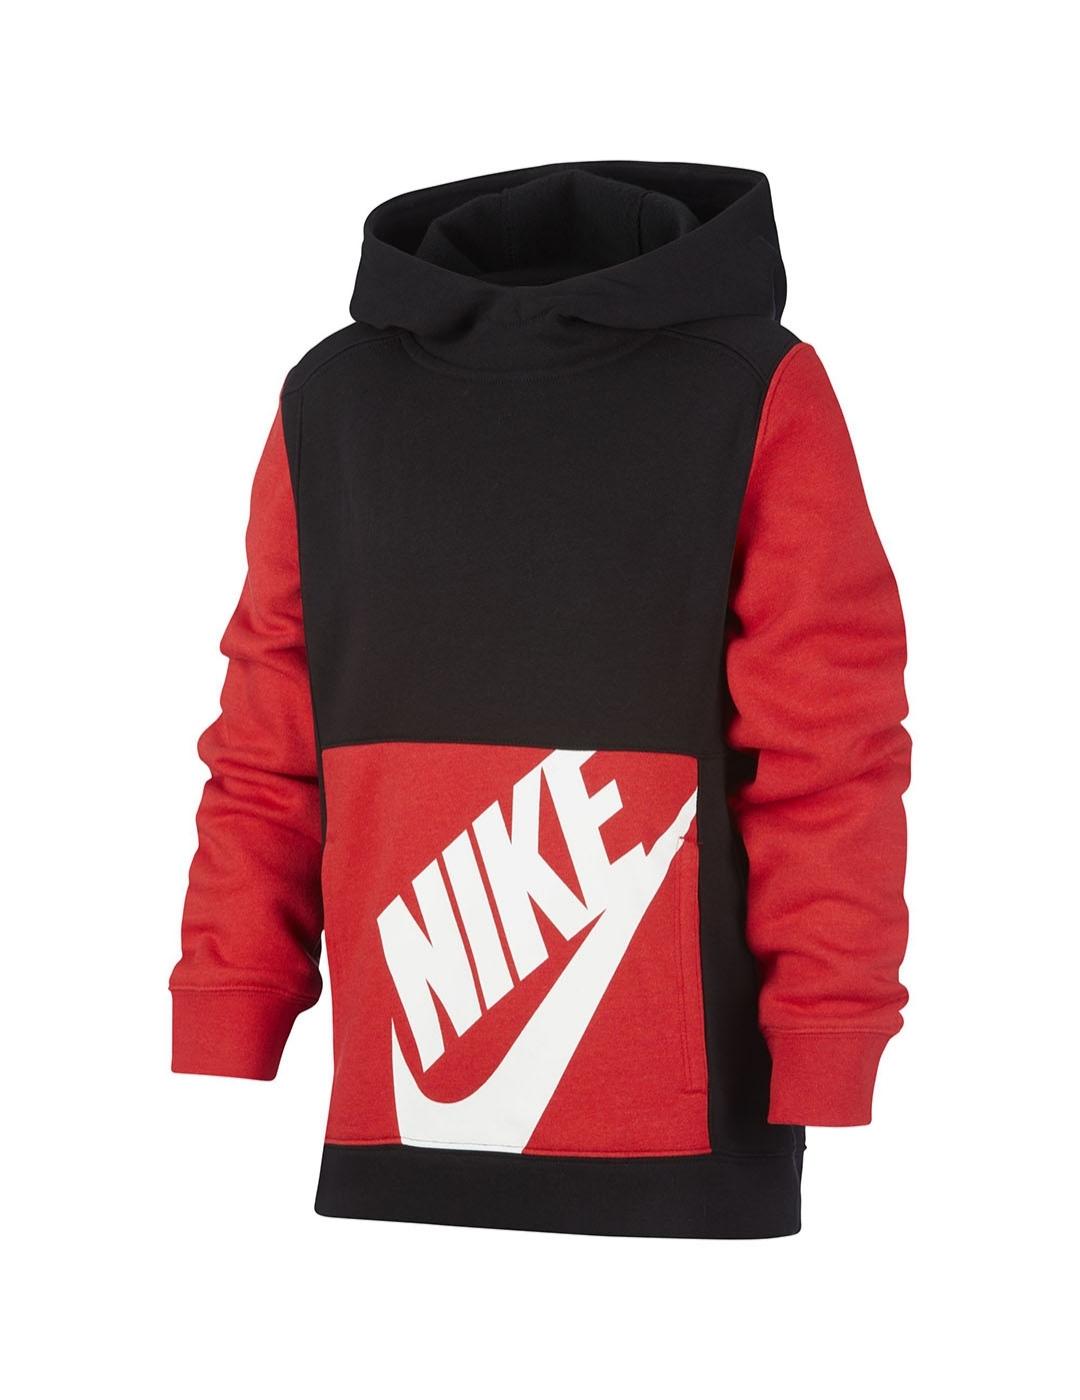 Sudaderas rojas con y sin capucha para niño. Nike ES